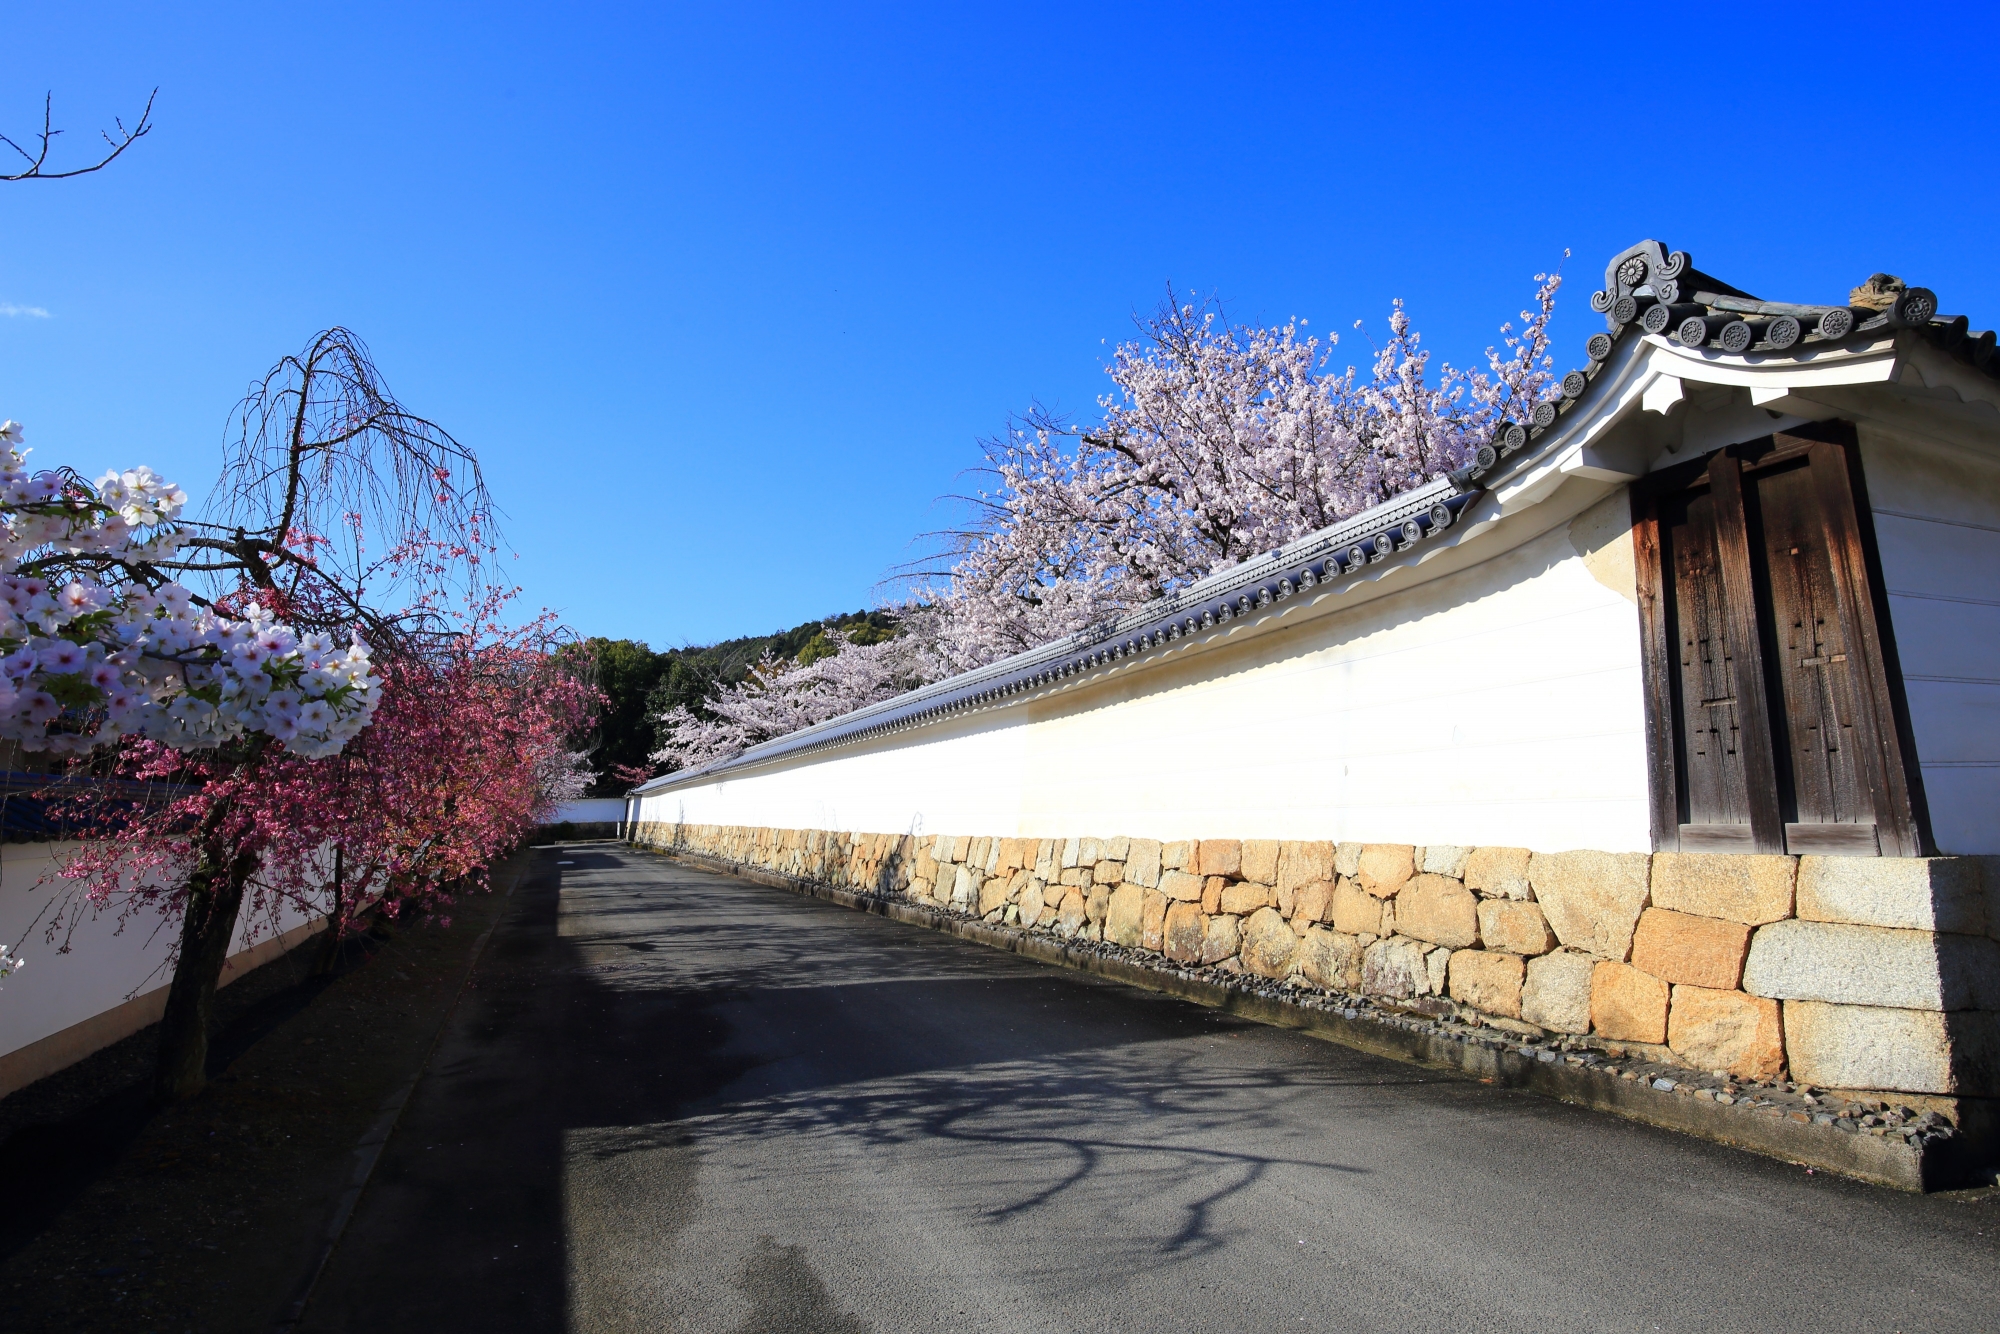 上品な白い土塀沿いに咲き誇る桜